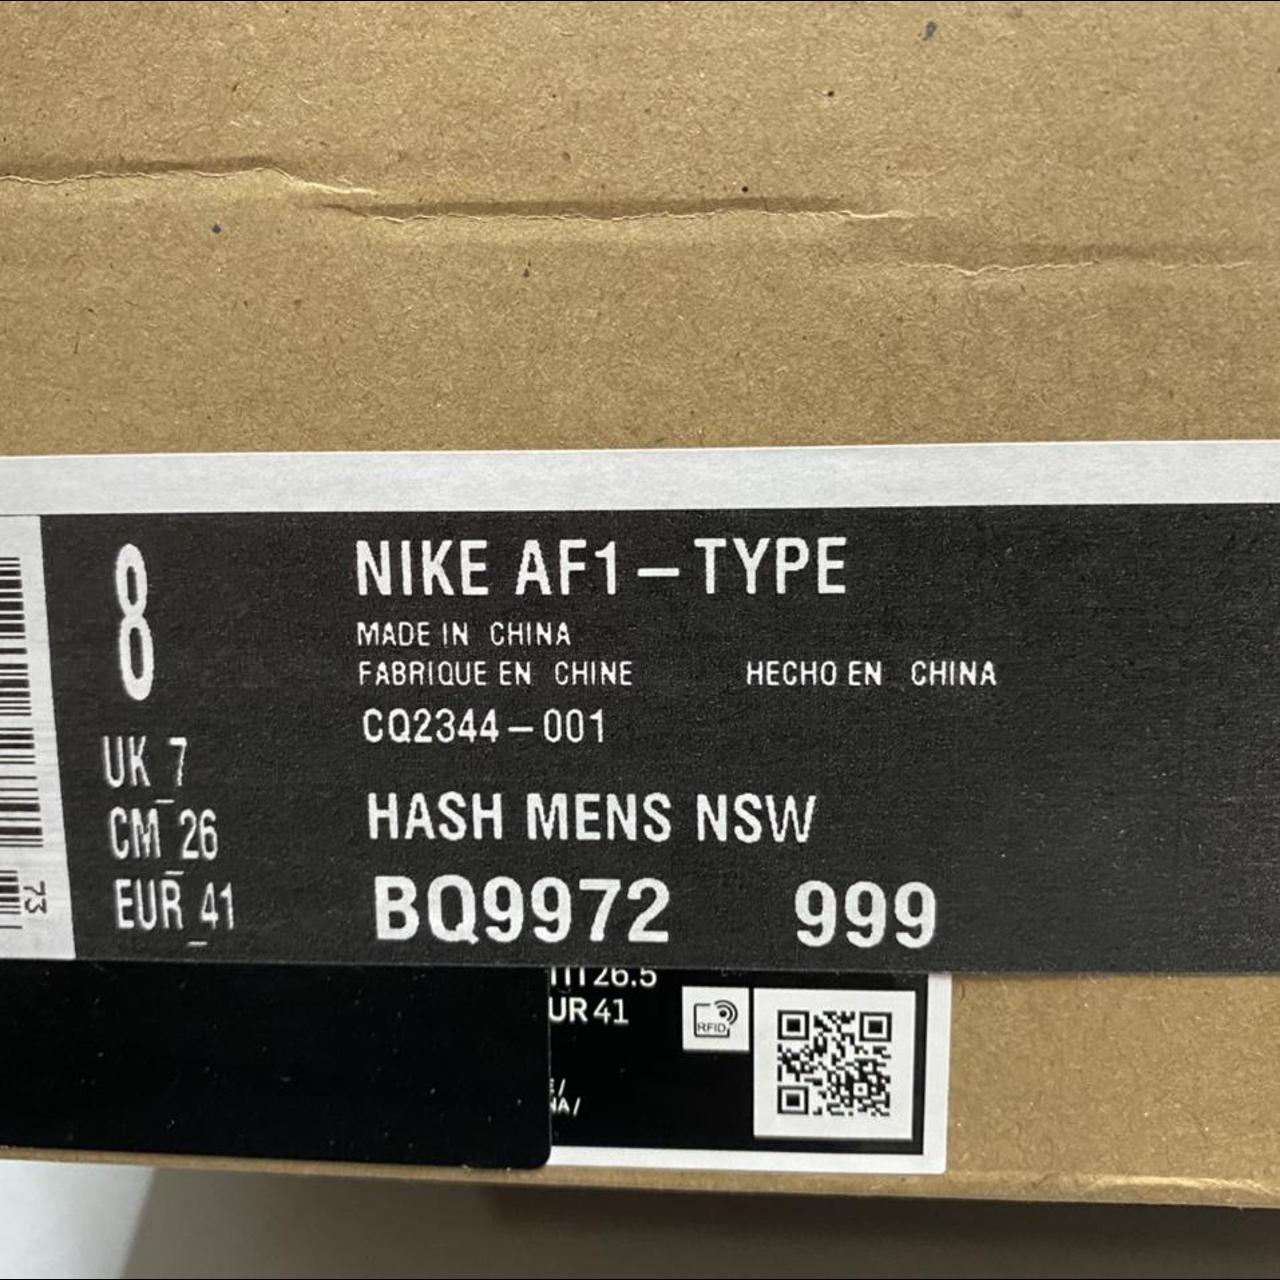 Nike AF1 worldwide black flash crimson size 8 - Depop